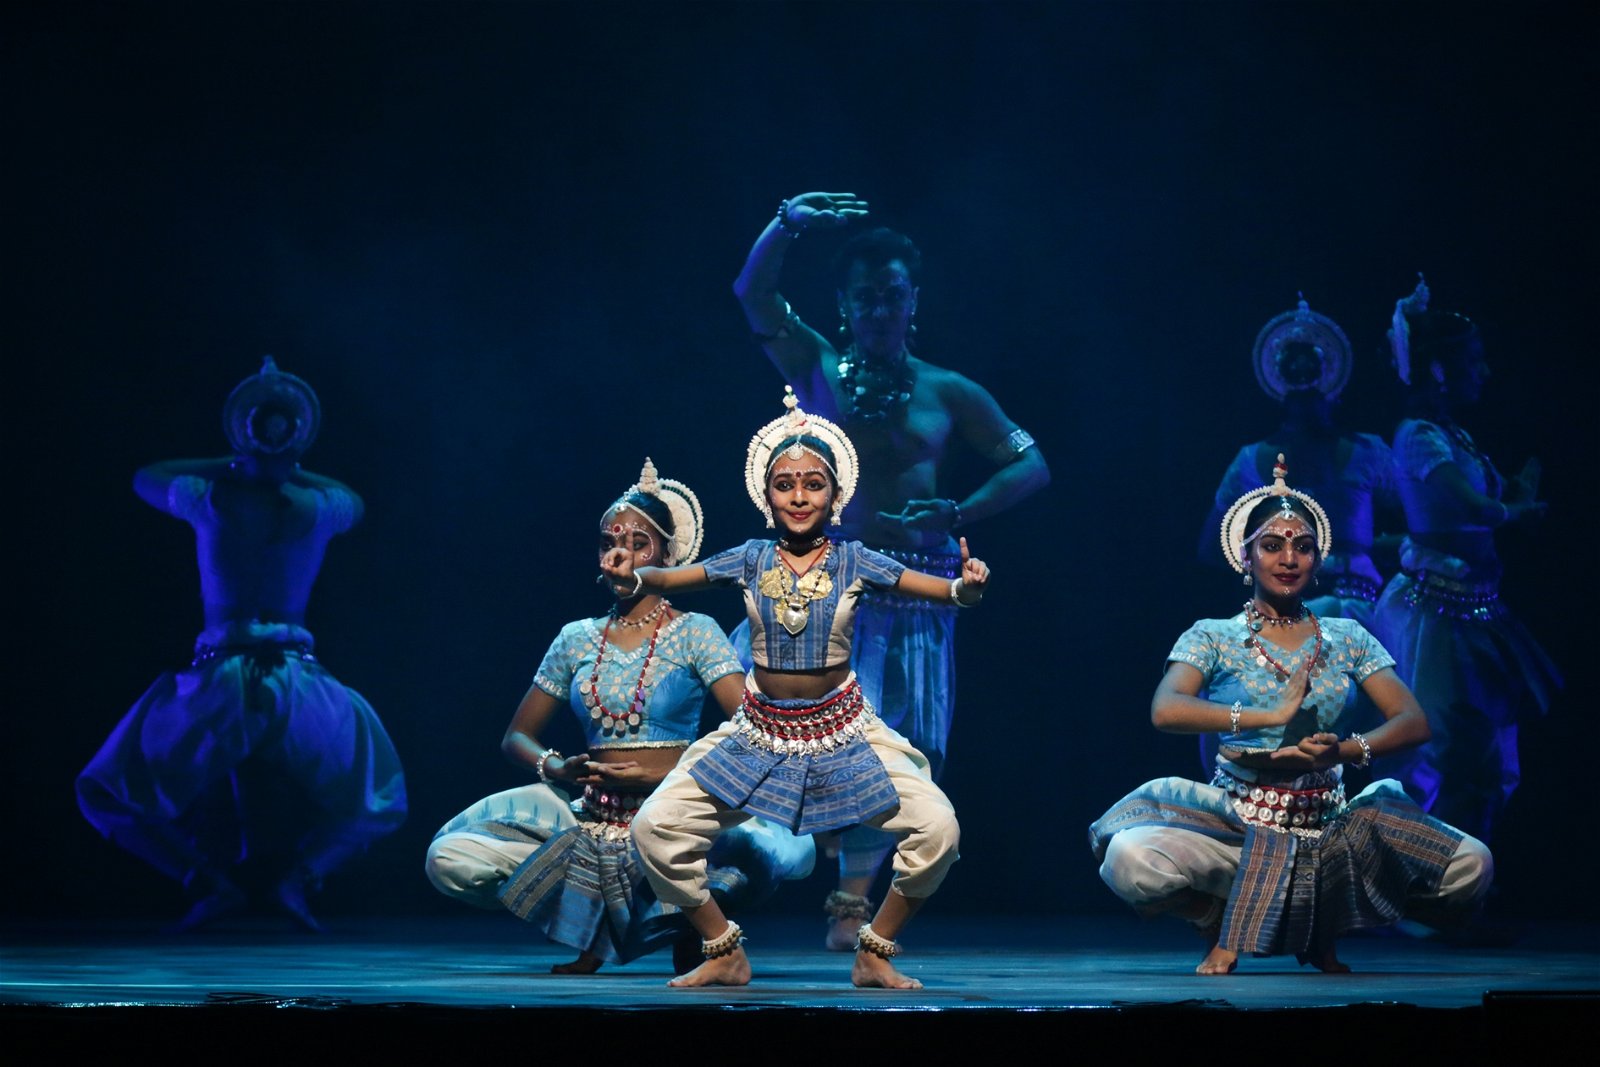 拿督南利依布拉 欣栽培了一群新 生代印度古典舞 蹈表演者，他们 将站在本届华穗 艺术节的舞台上 展现精湛舞艺。